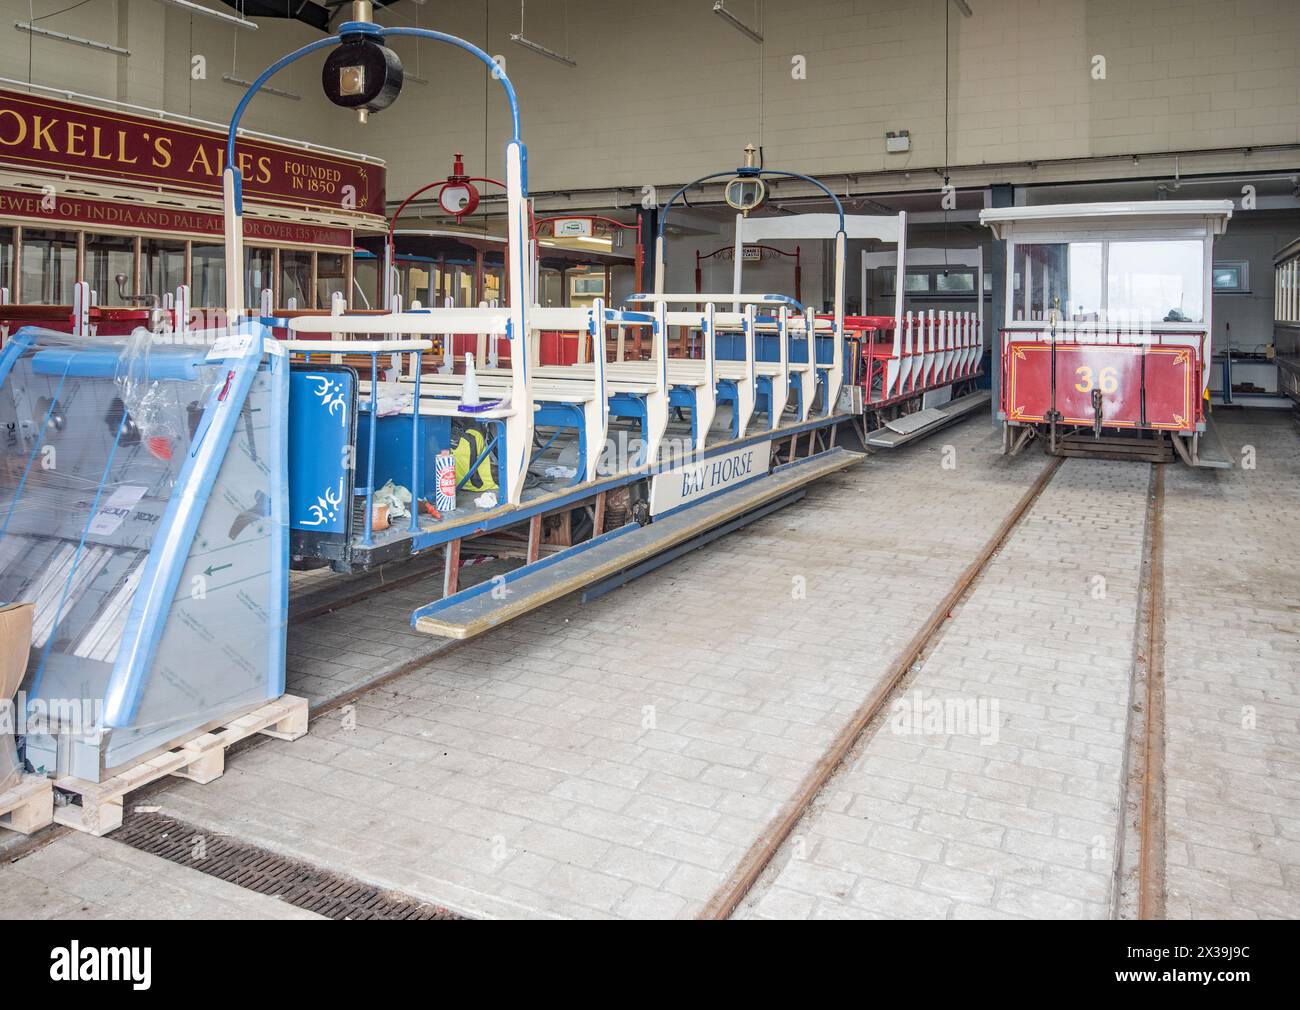 Guardando attraverso la porta cordata che conduce ai capannoni dei tram si scopre una serie di tram, tra cui un toastrack. Questi sembrano essere tram d'epoca originali. Foto Stock